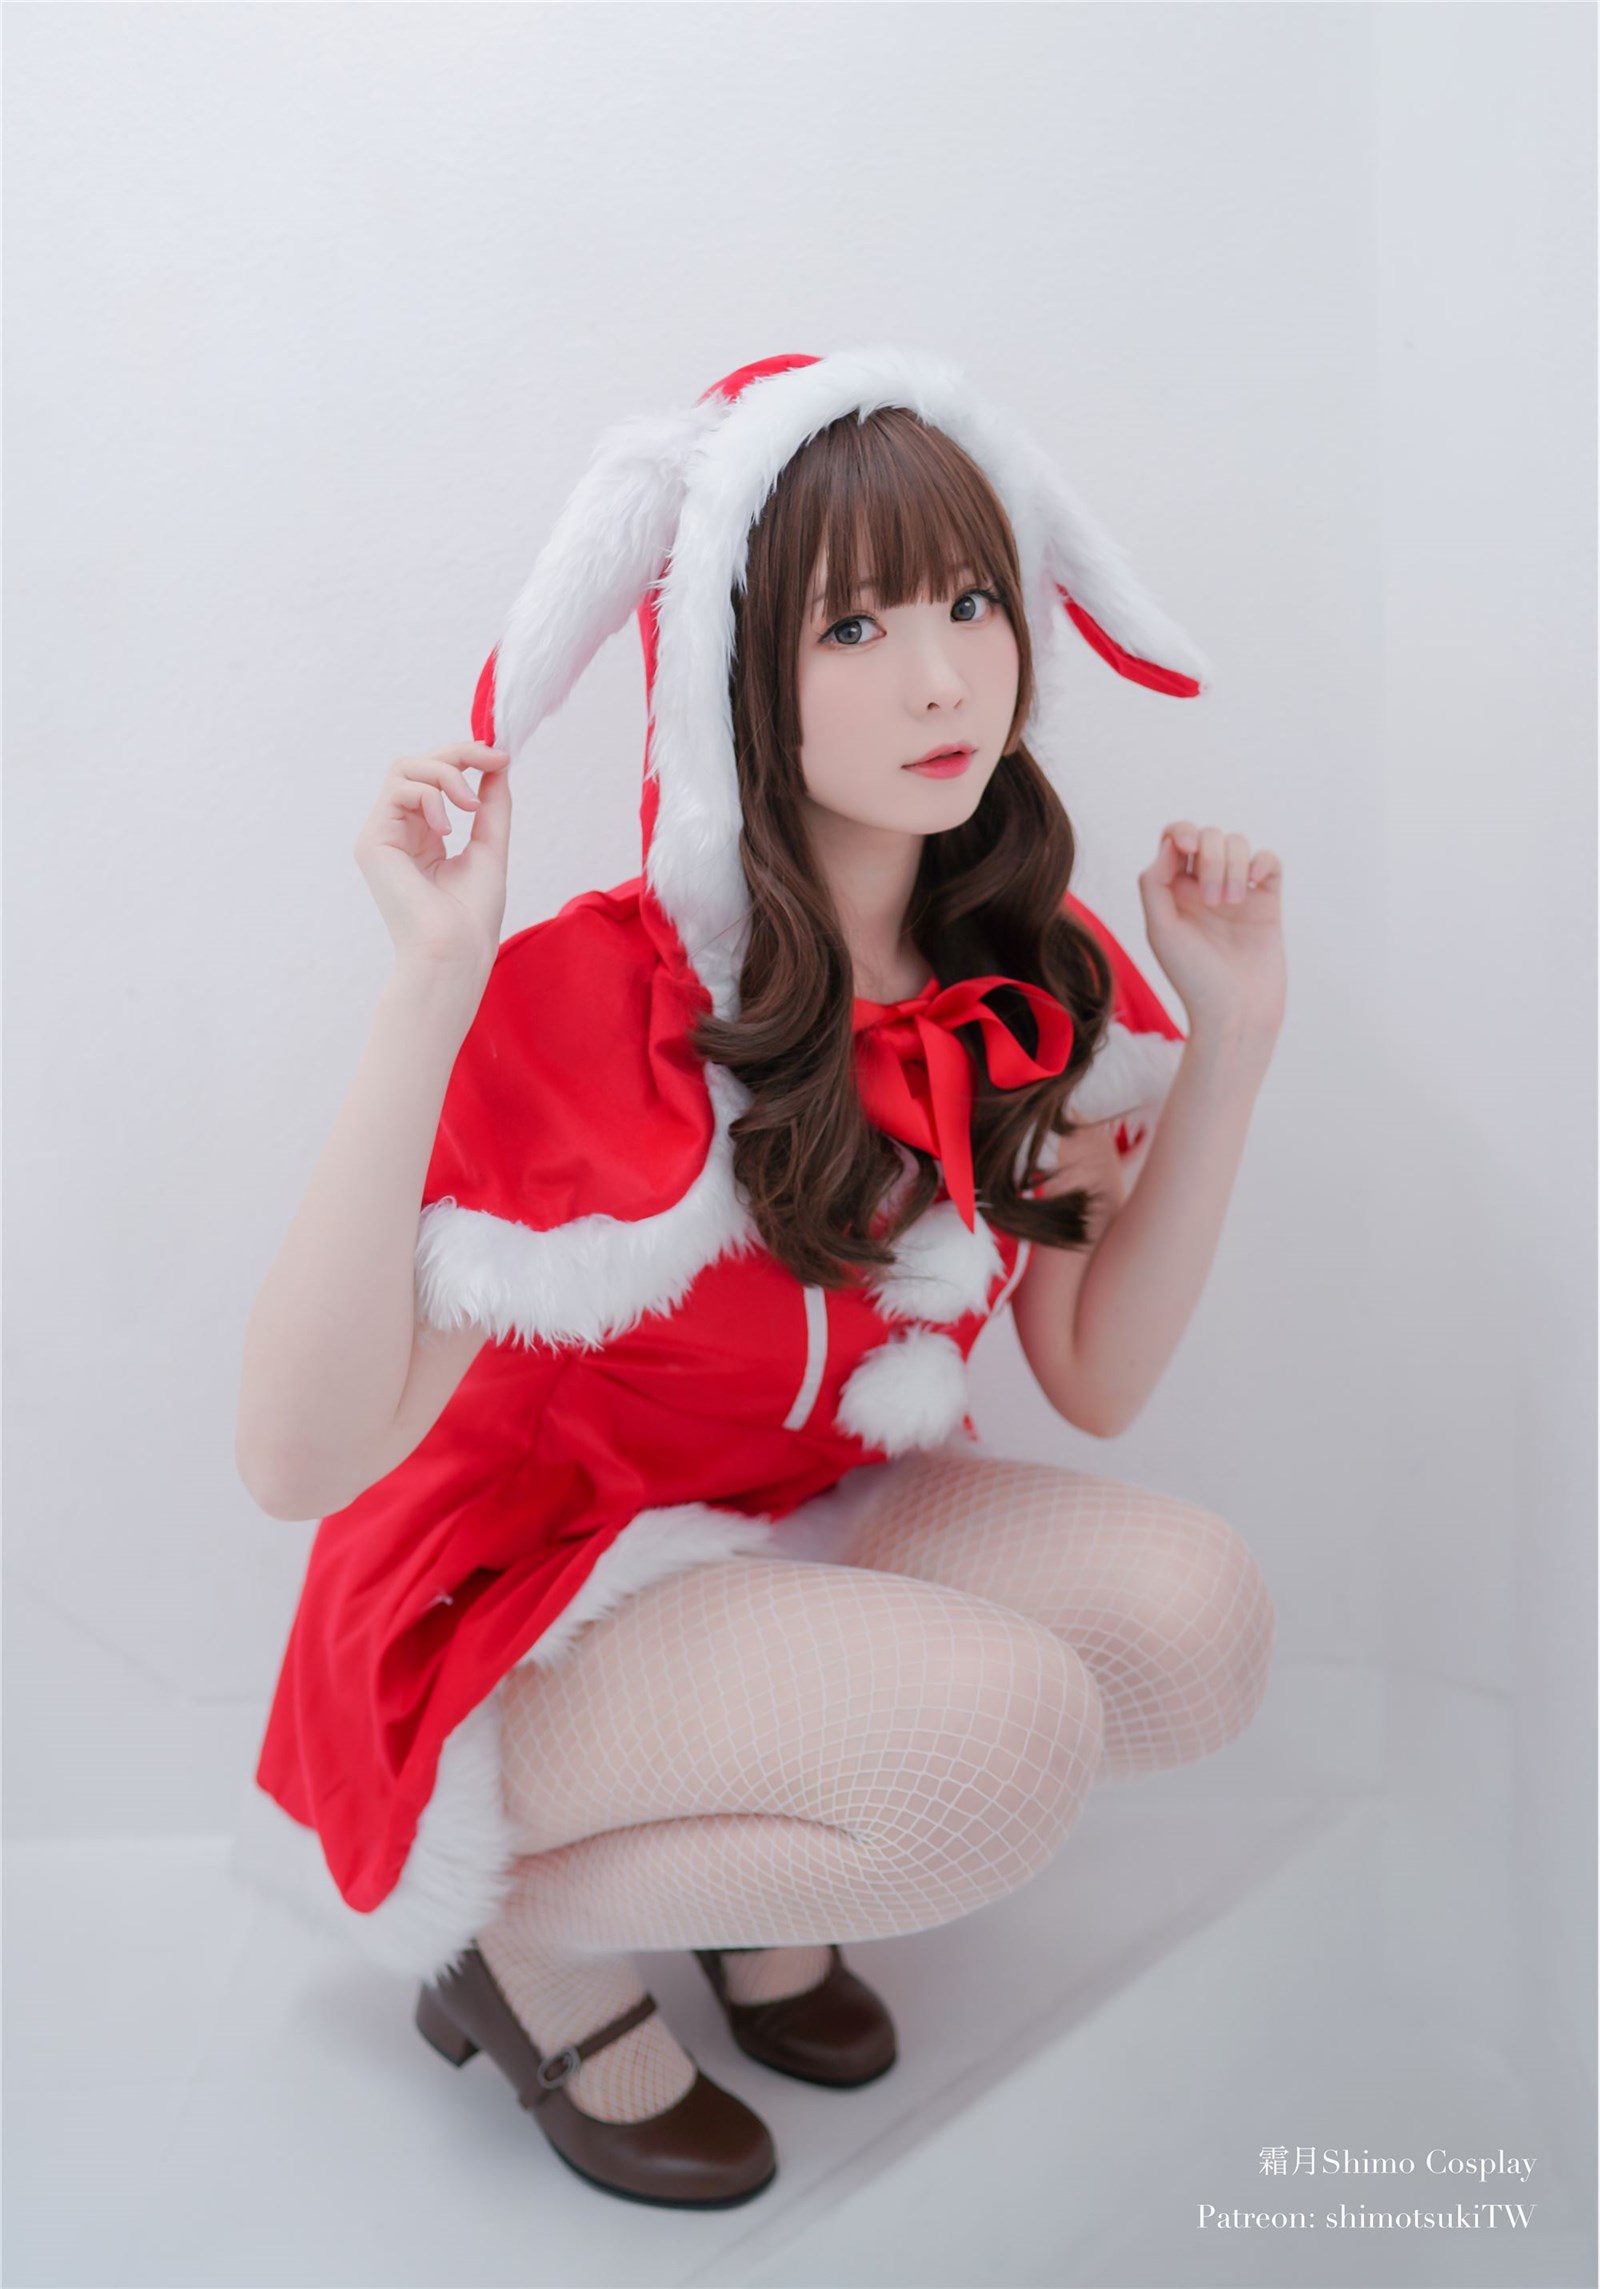 Frost moon Shimo - The Christmas Rabbit(4)